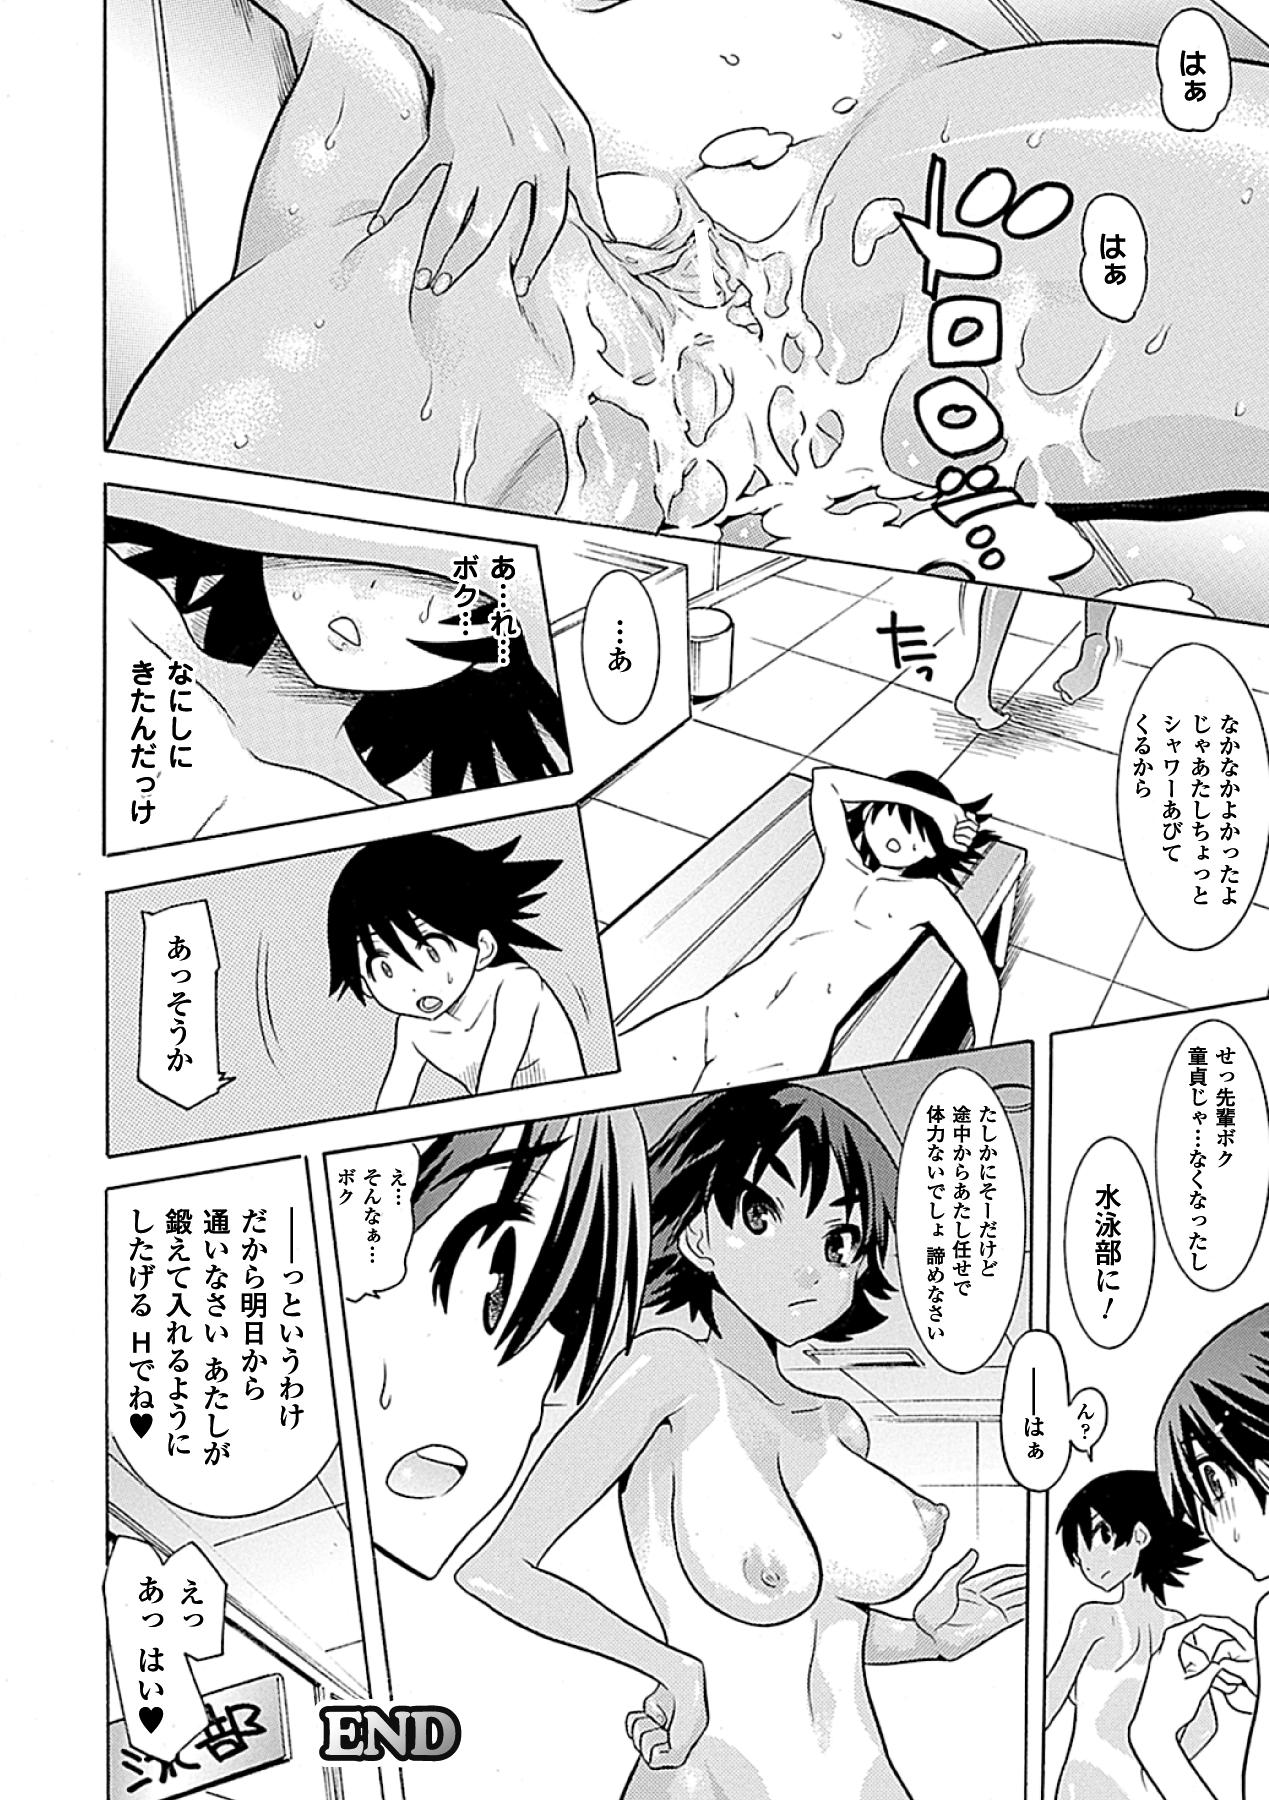 Kasshoku Heroine Vol.2 Digital 23